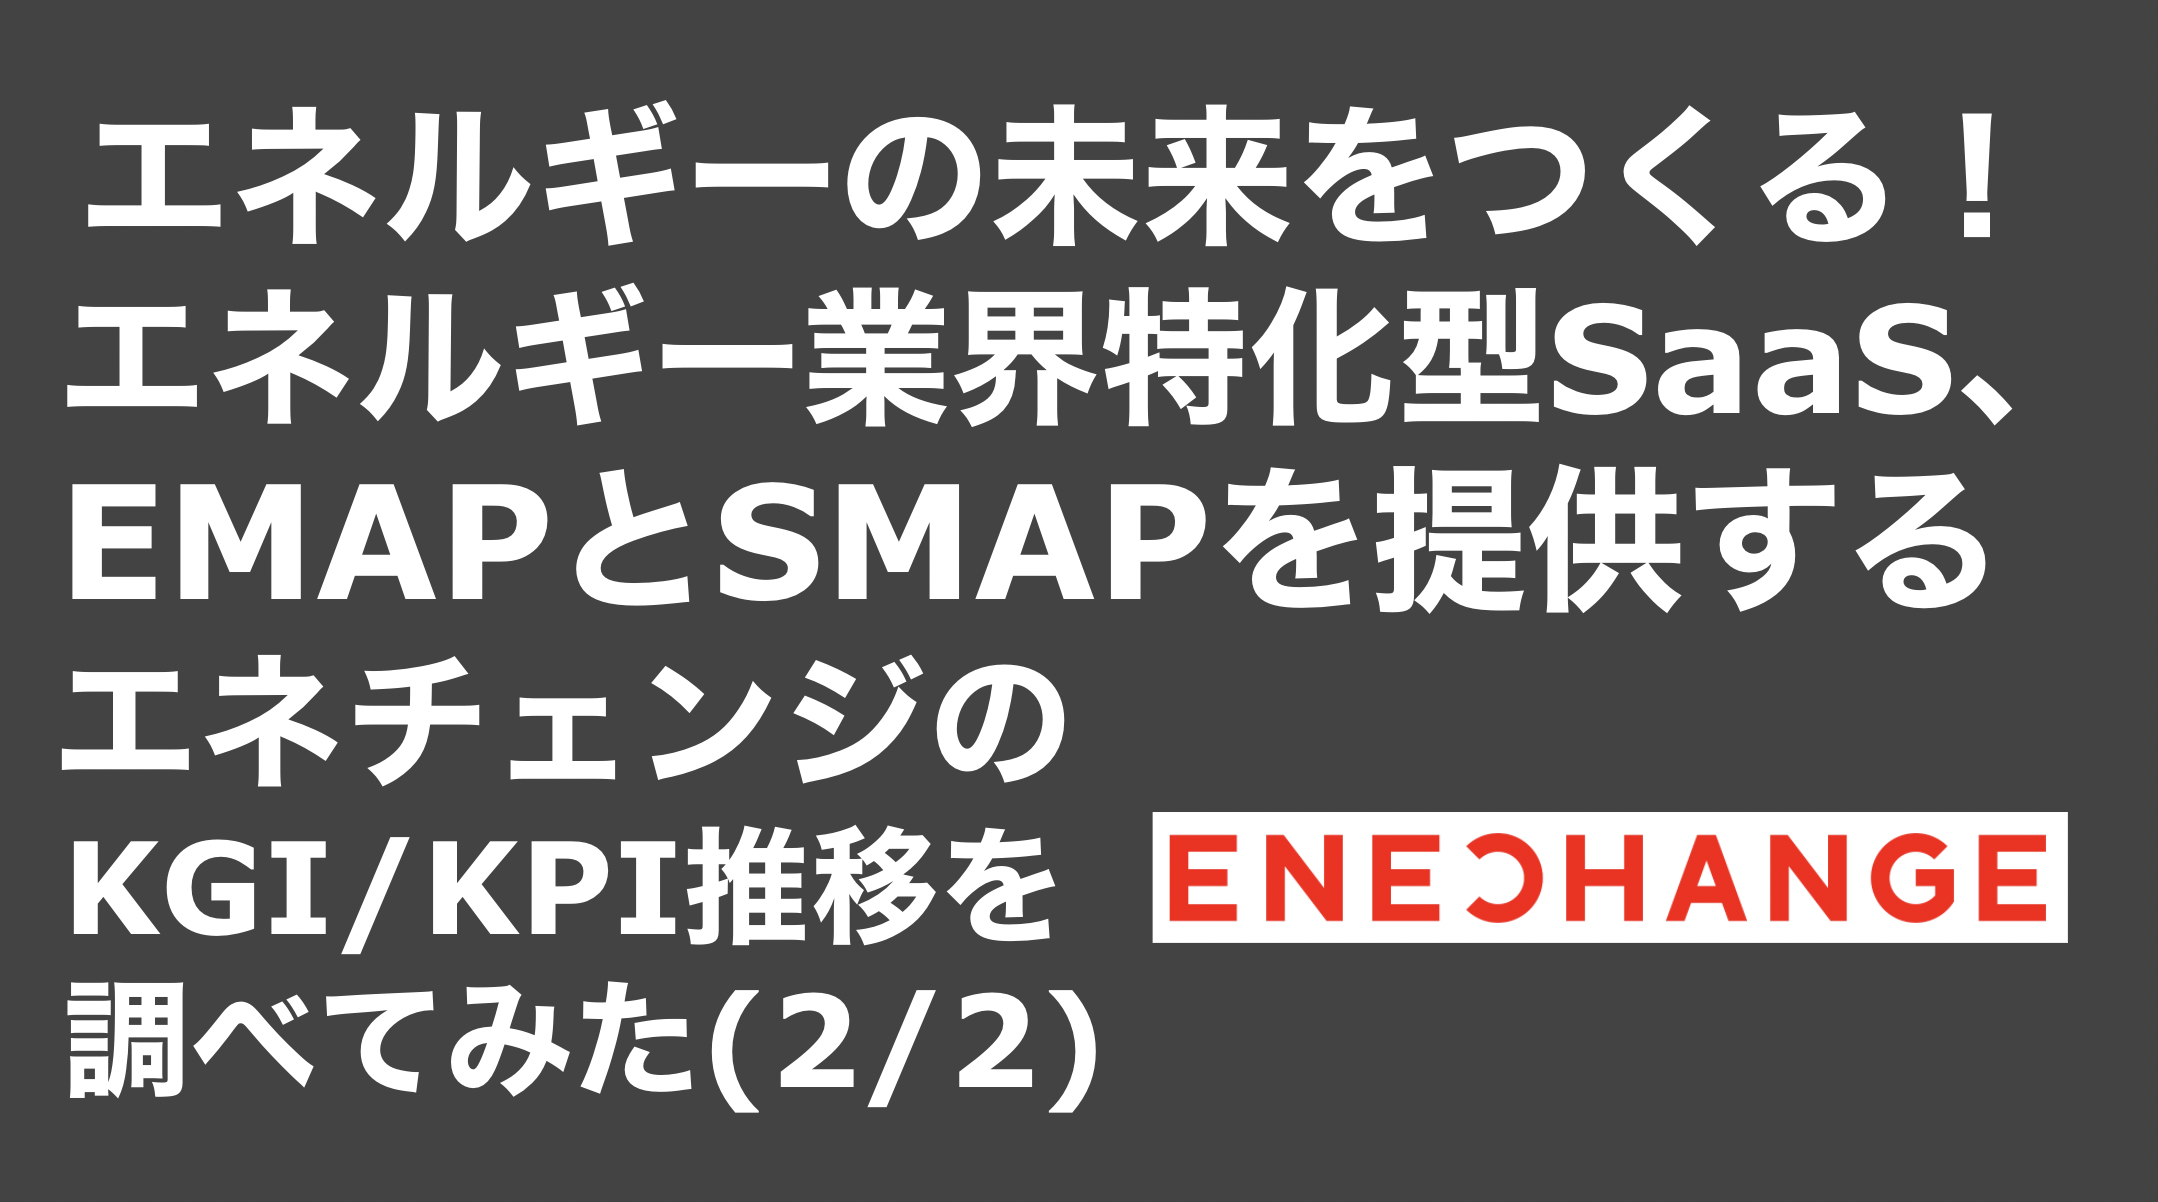 saaslife_エネルギーの未来をつくる！エネルギー業界特化型SaaS、EMAPとSMAPを提供するエネチェンジのKGI/KPI推移を調べてみた(2/2)